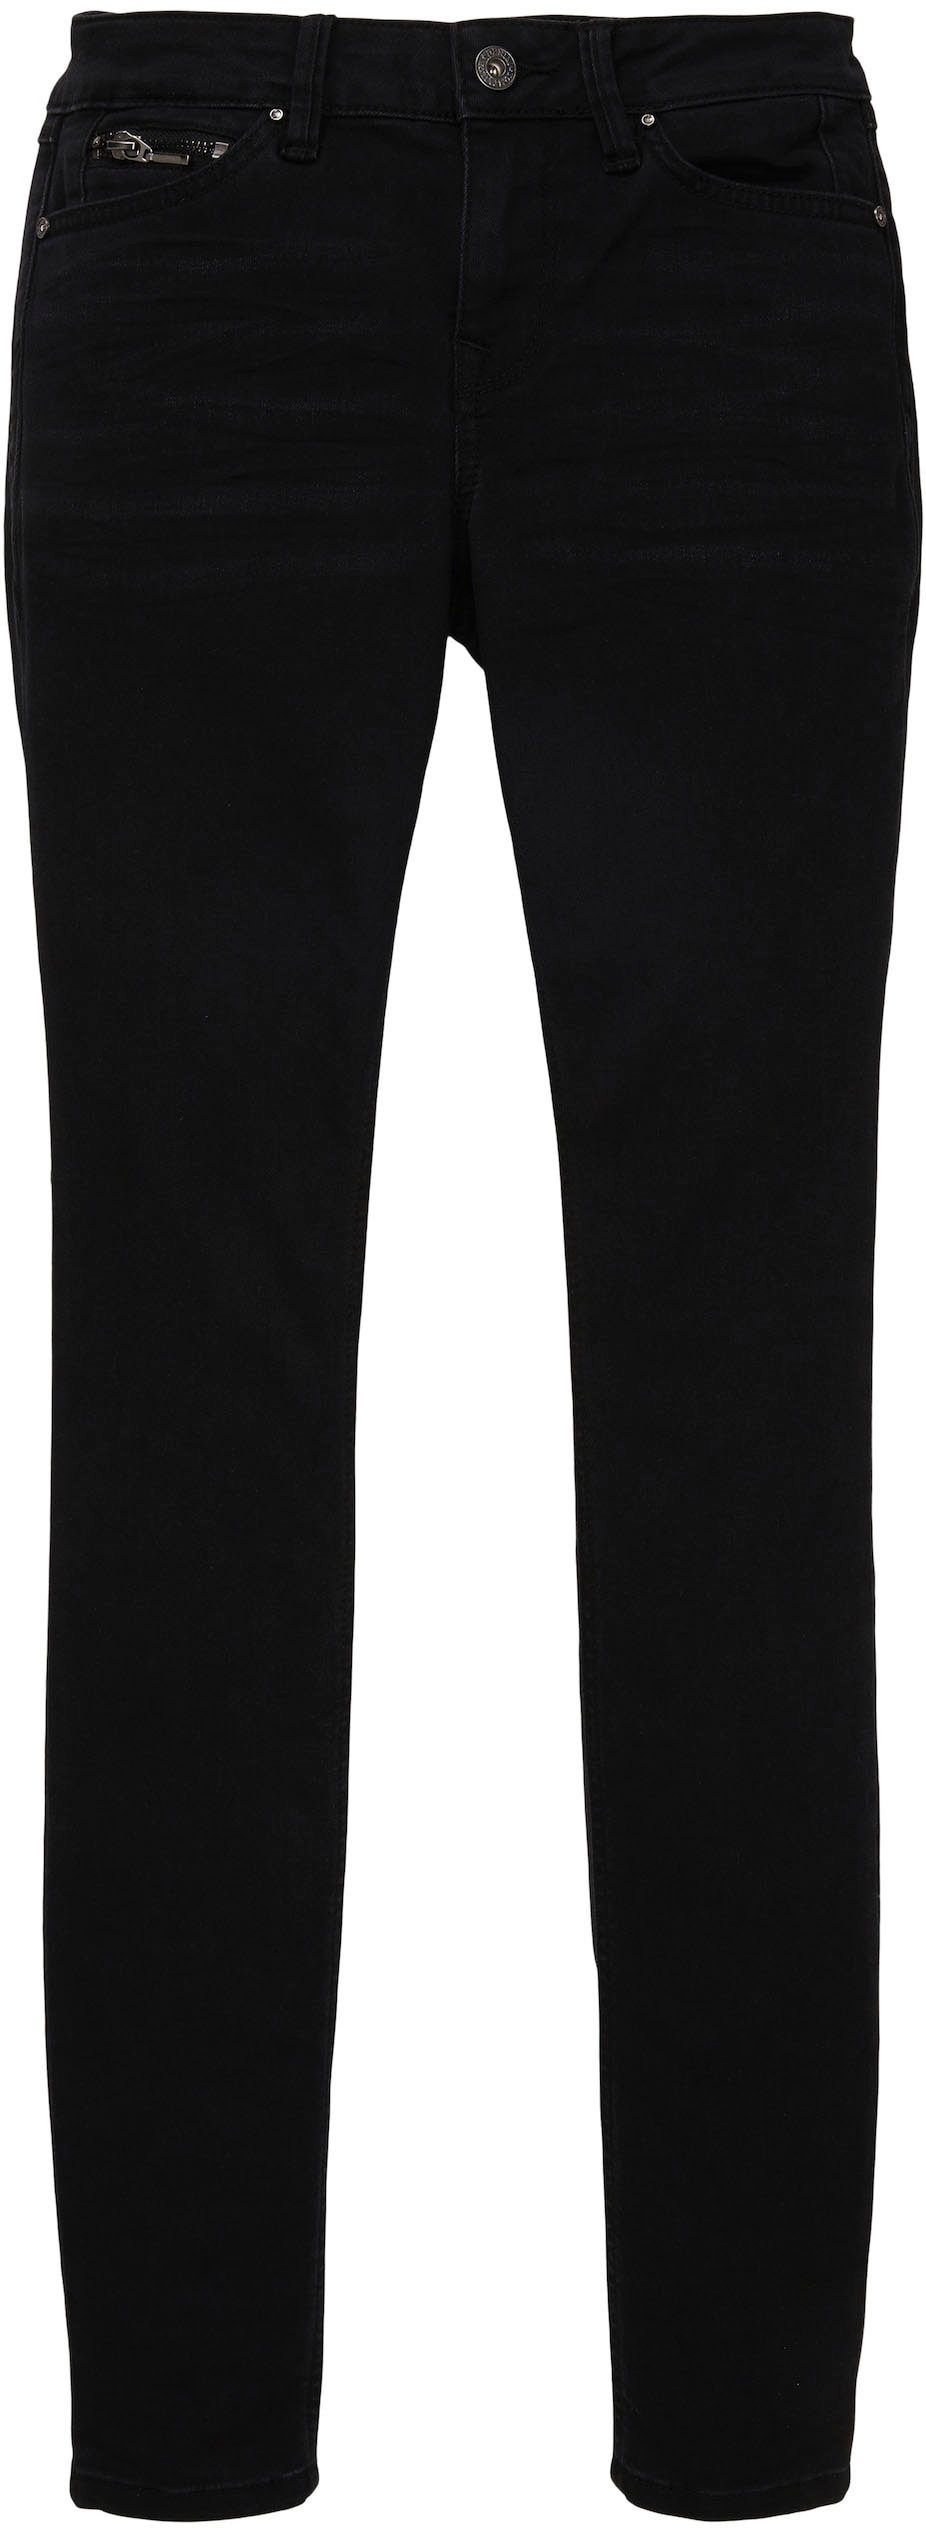 Denim Skinny-fit-Jeans TOM clean TAILOR dark JONA black denim stone